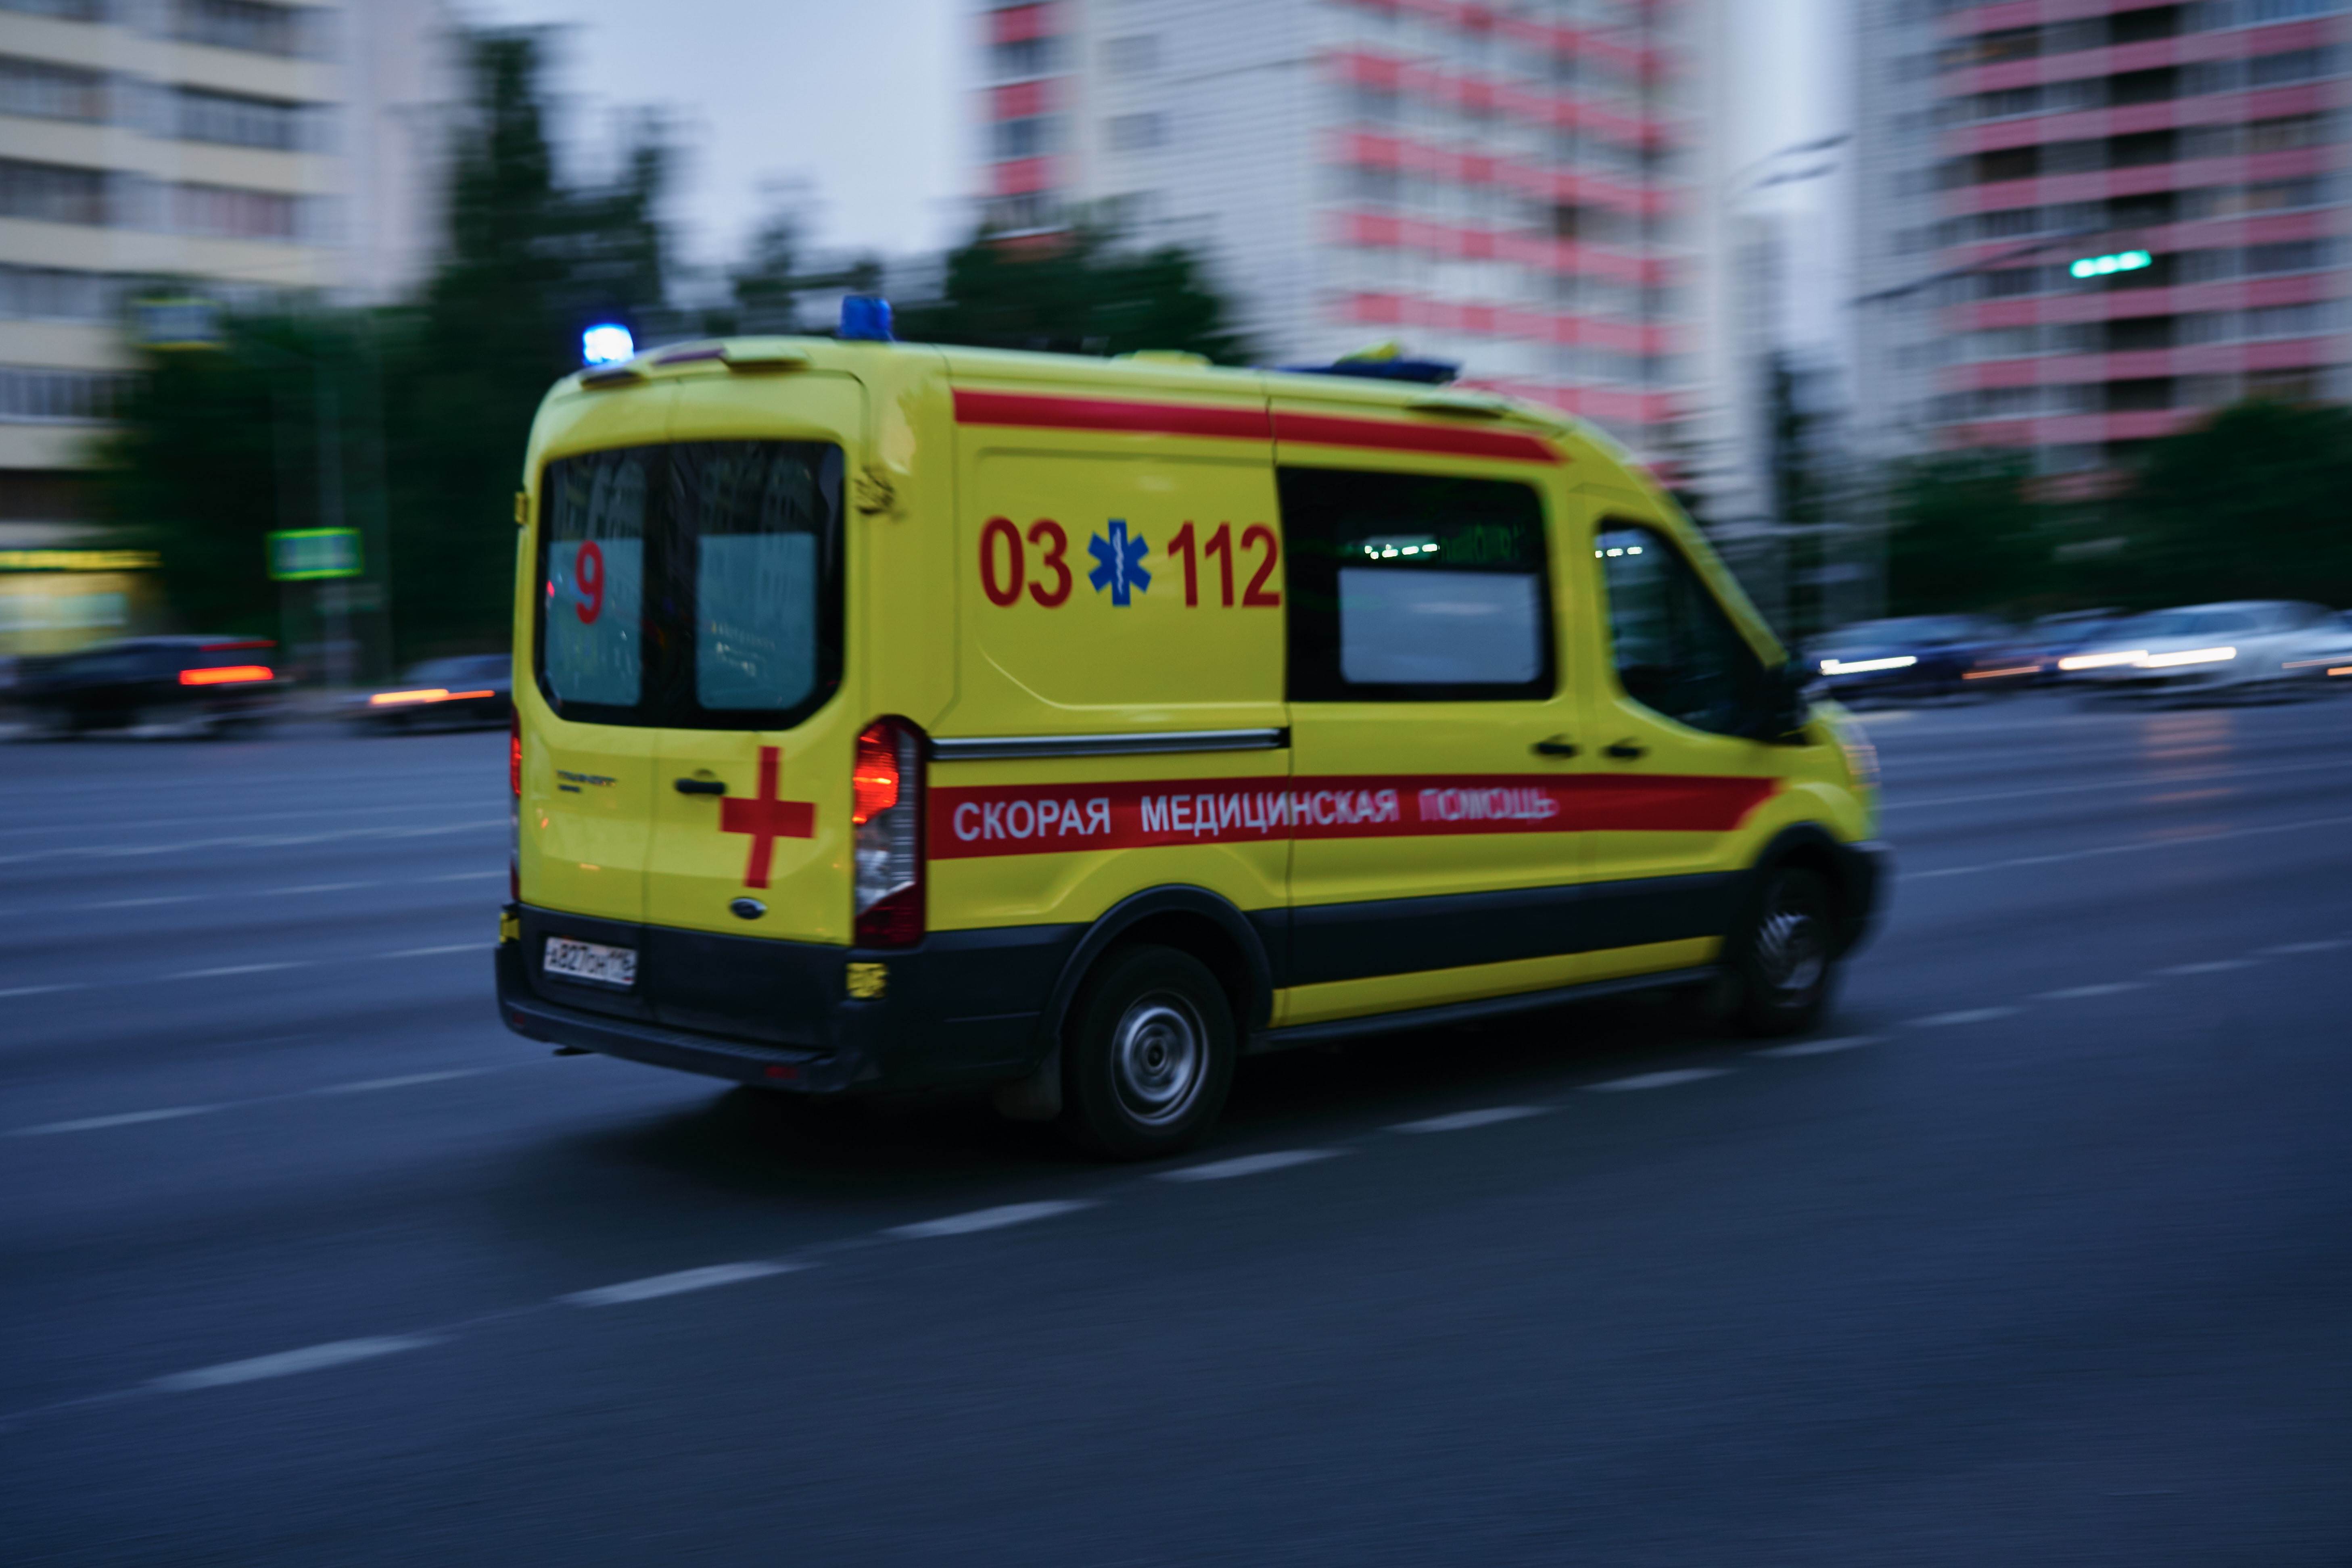 Первокурсник разбился насмерть при падении из окна общежития в Петербурге